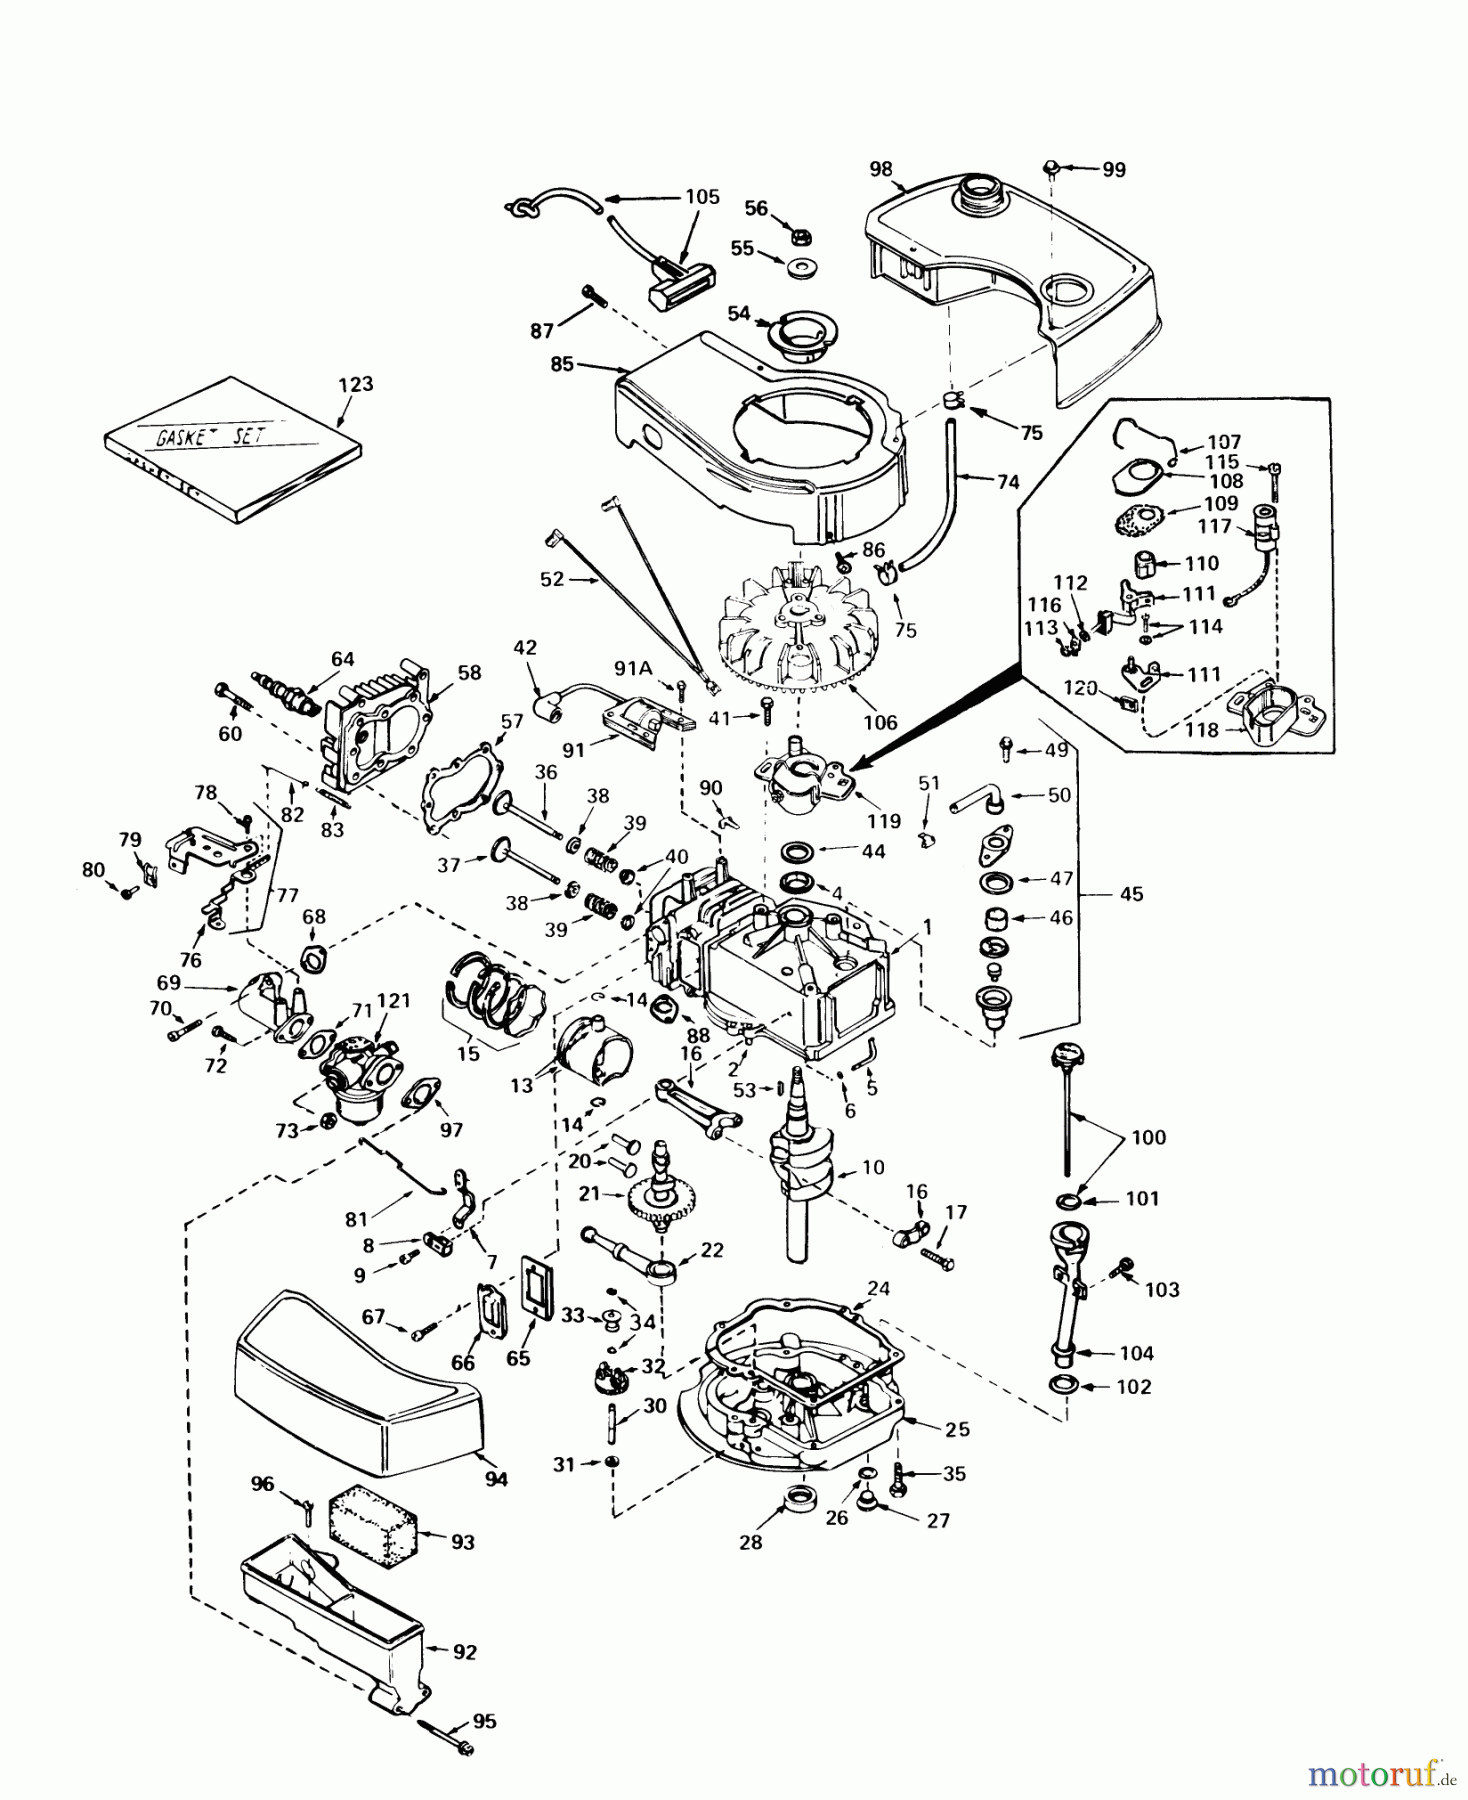  Toro Neu Mowers, Walk-Behind Seite 2 21738 - Toro Whirlwind Lawnmower, 1979 (9000001-9999999) ENGINE TECUMSEH MODEL NO. TNT 100-10056C